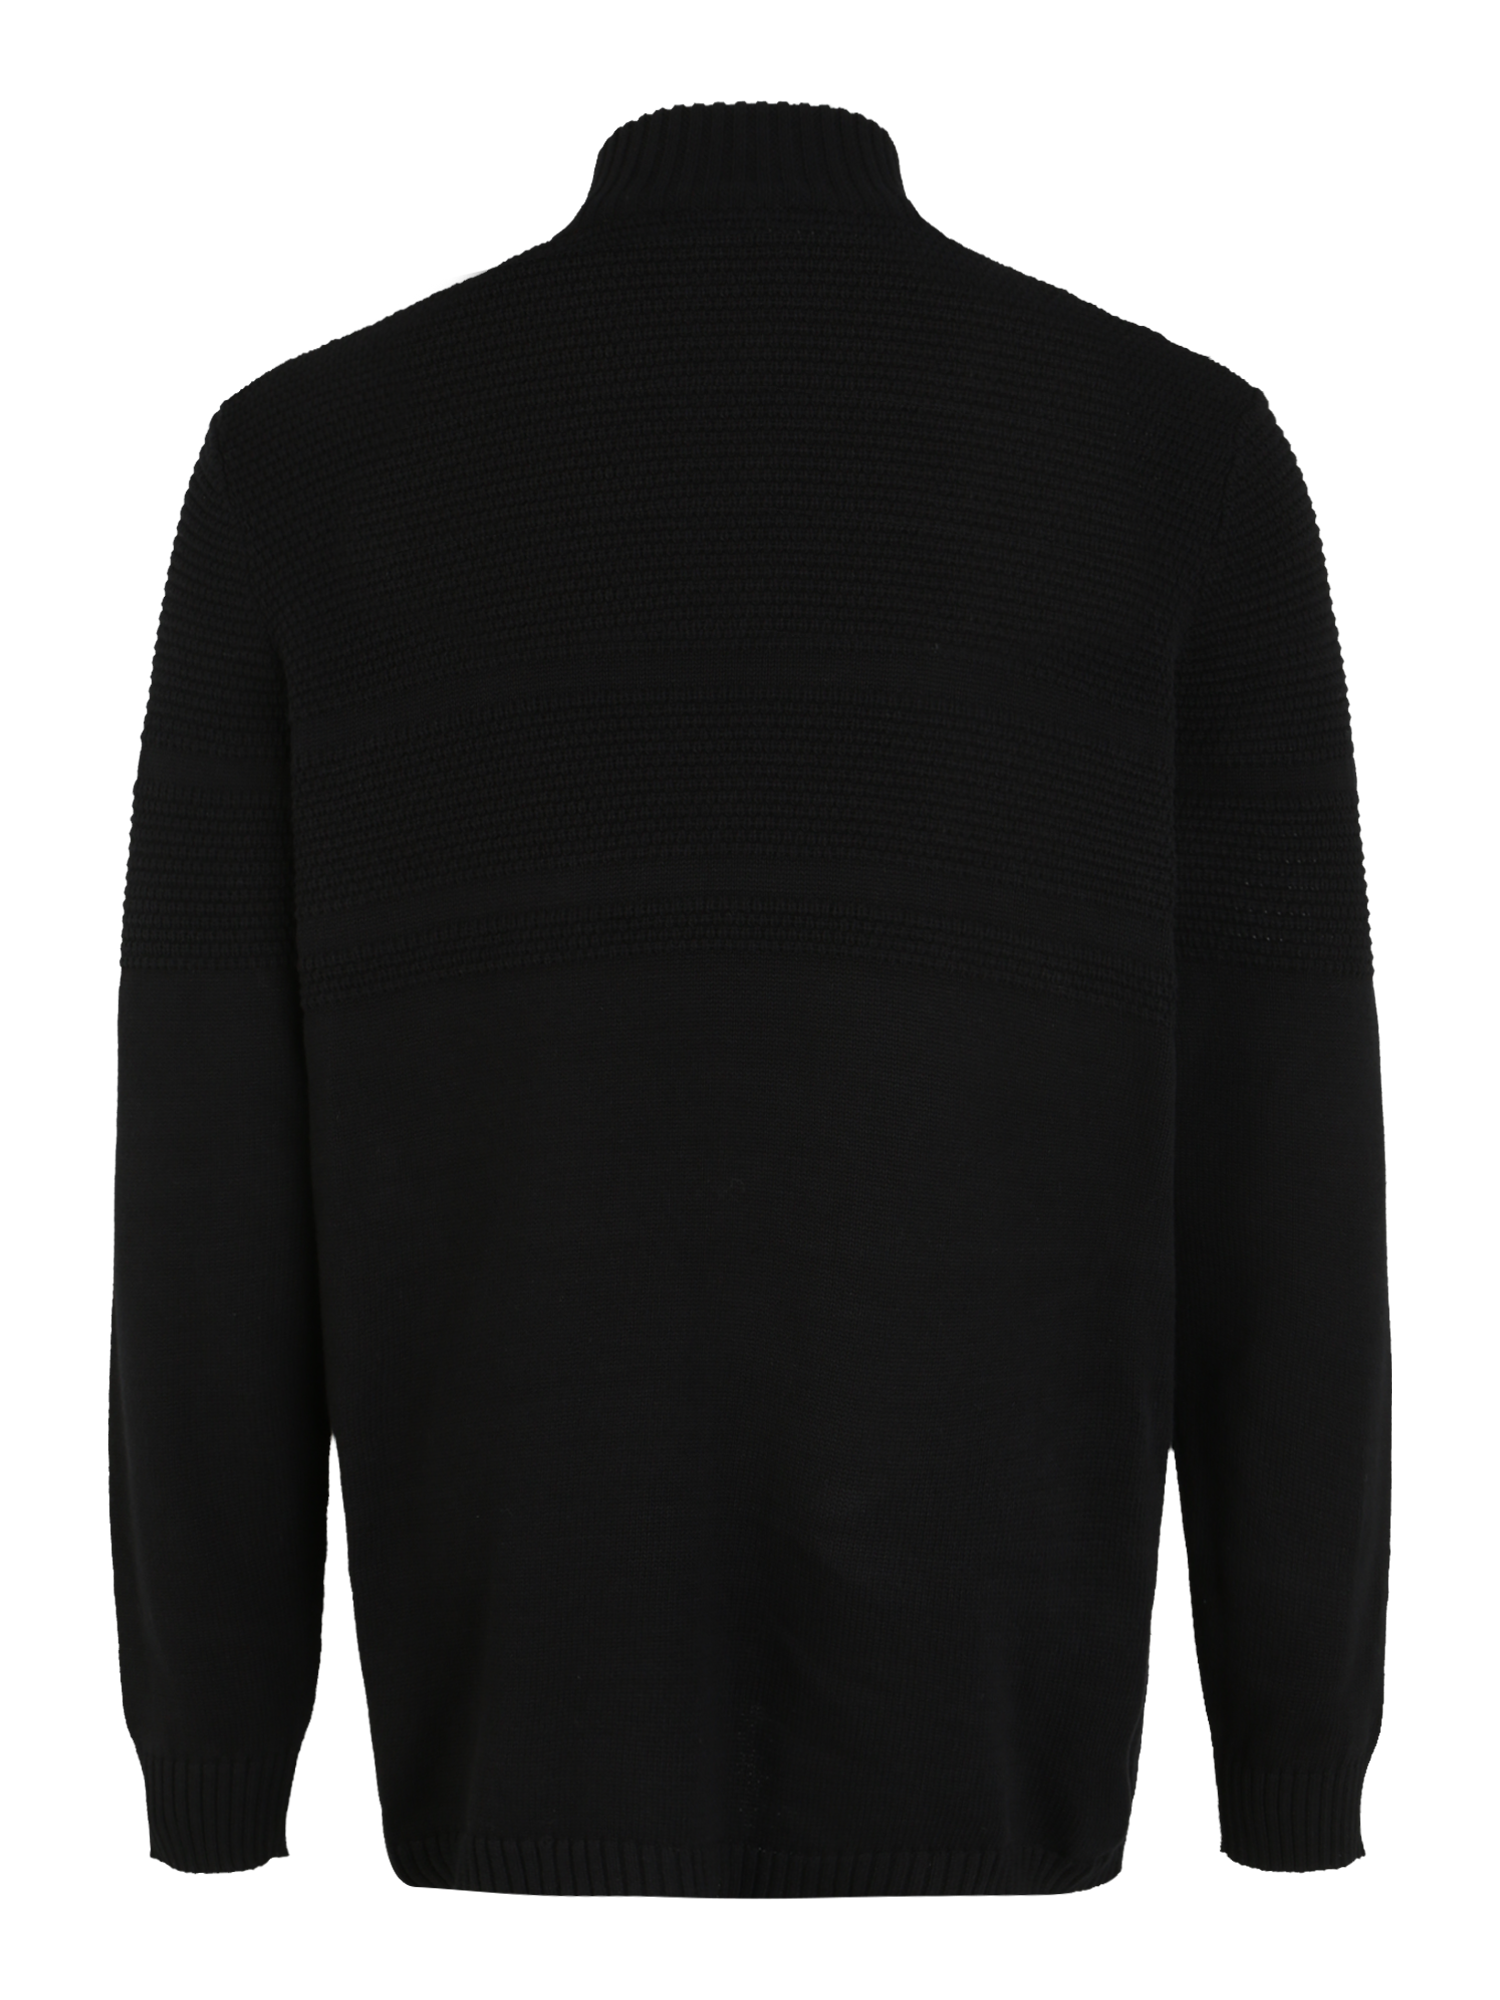 Odzież Mężczyźni Only & Sons Big & Tall Sweter w kolorze Czarnym 